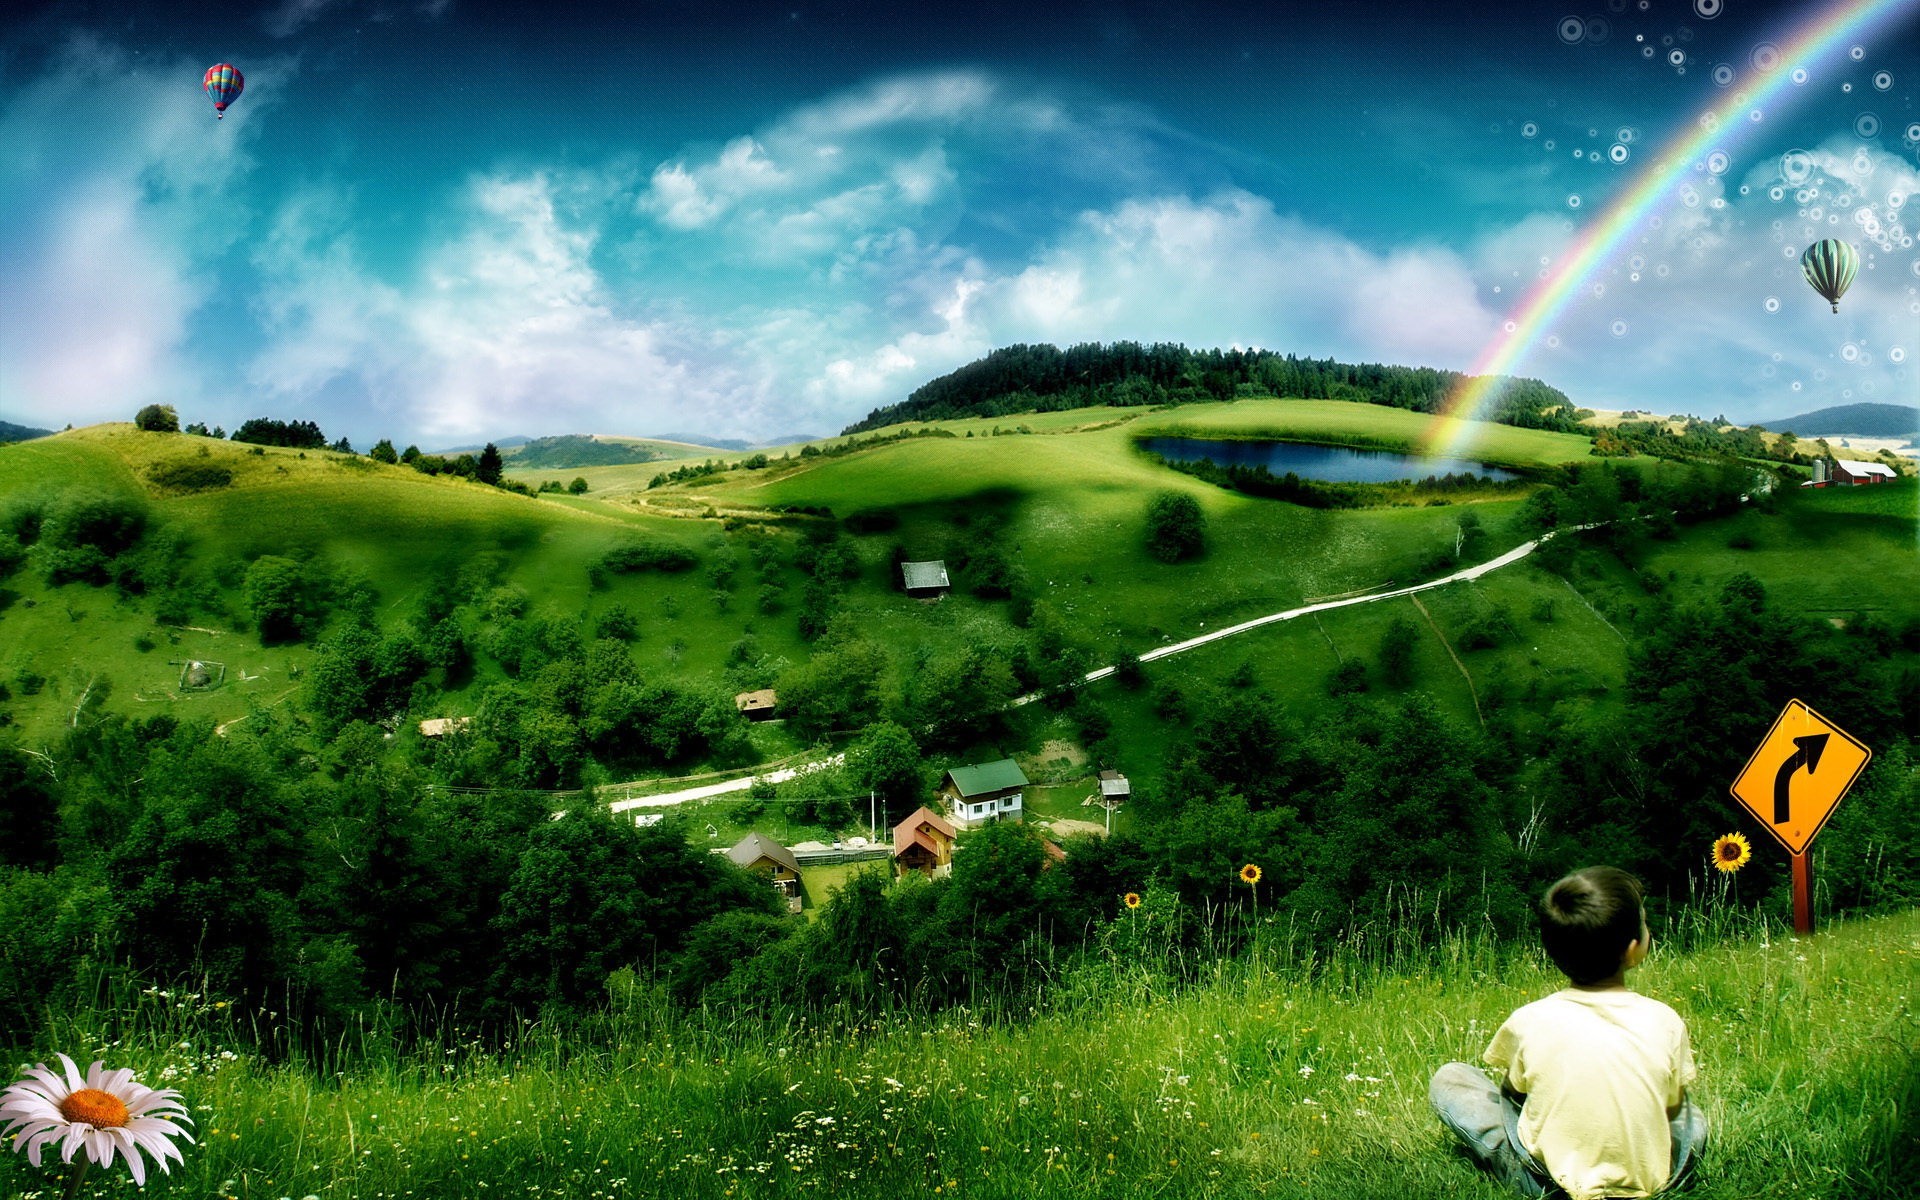 تصویر منظره هنری فصل بهار همراه با رنگین کمان و غروب آفتاب برای چاپ کتاب